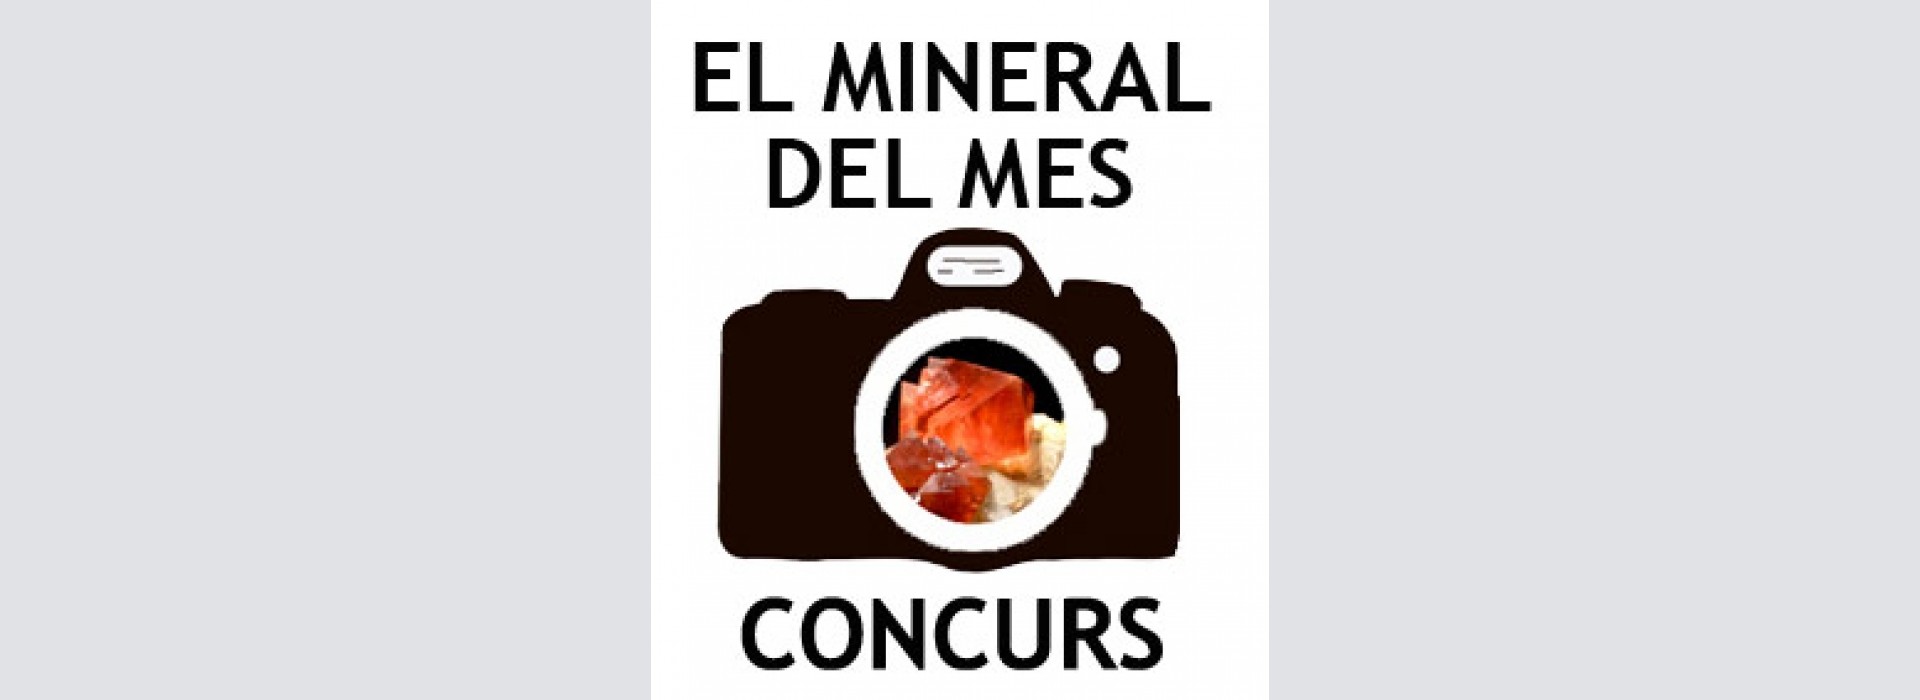 Concurso “El mineral del mes” - Marzo 2019.